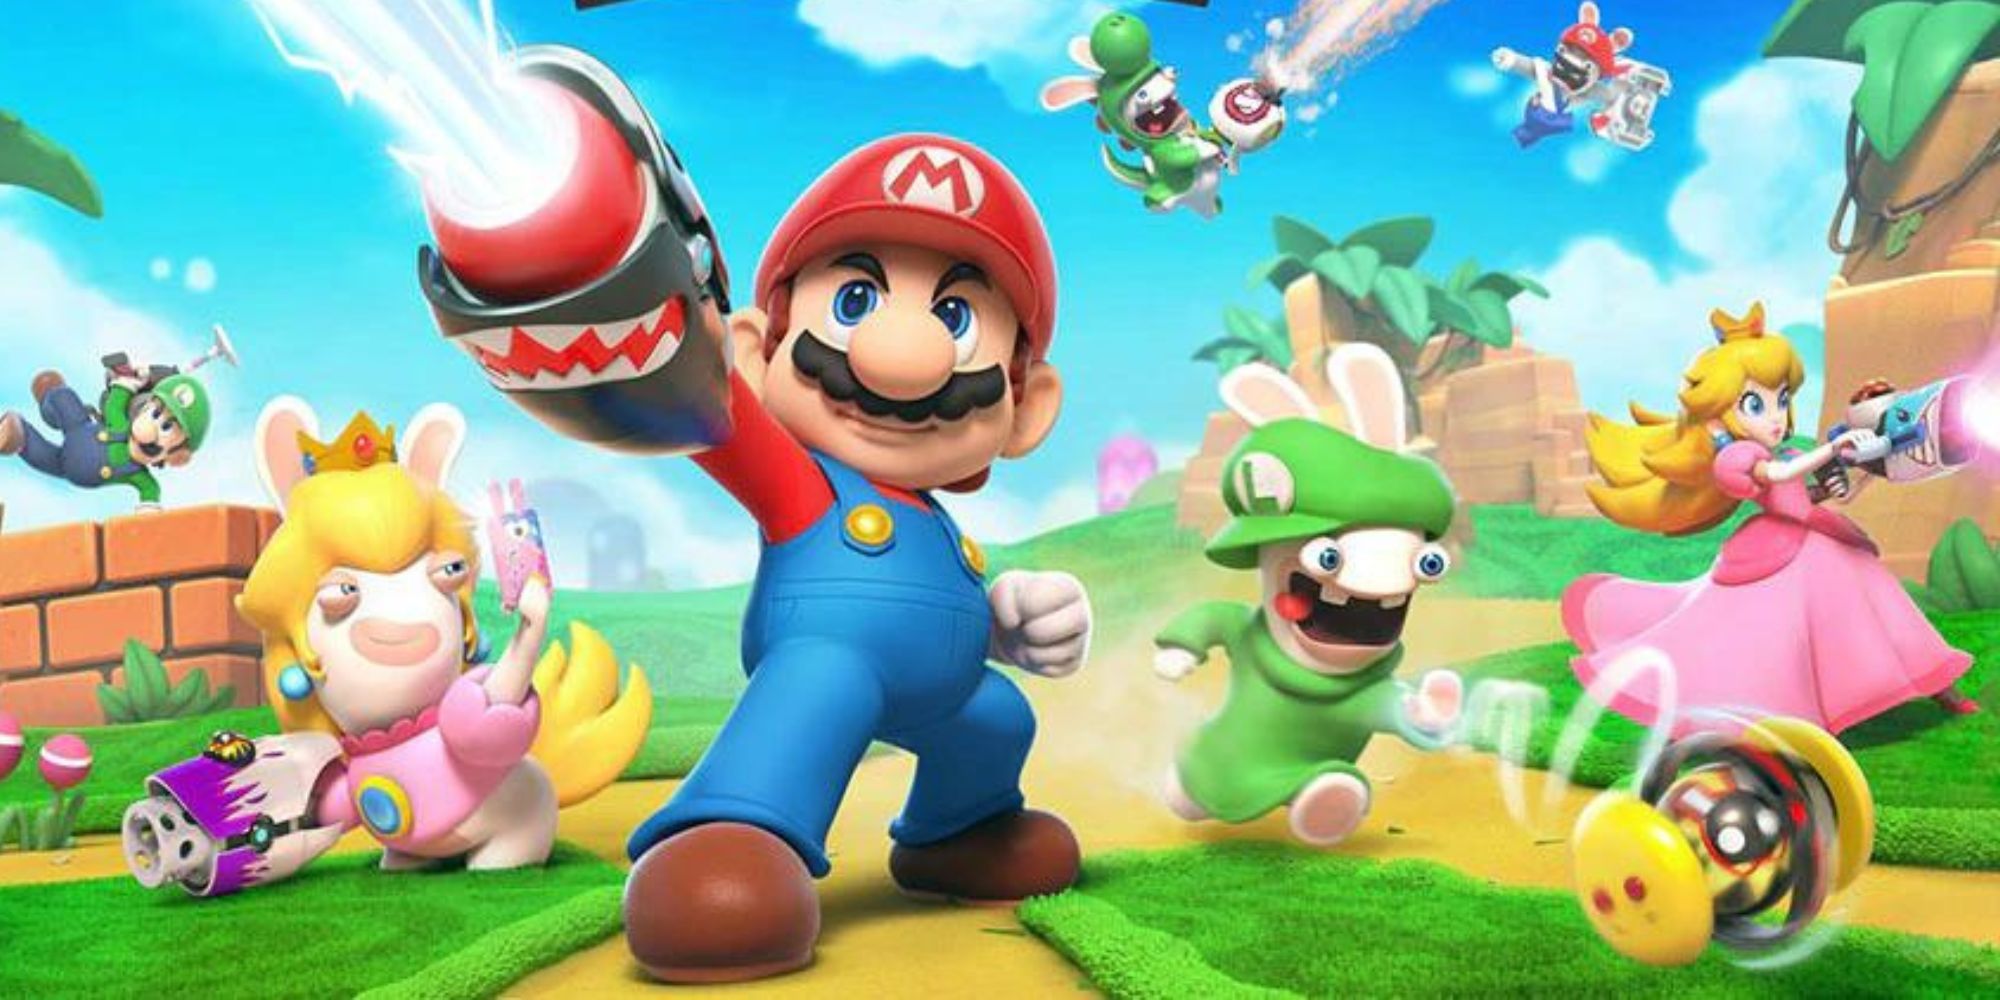 Mario, Rabbid Luigi, Rabbid Peach, Princess Peach, and Luigi attack with guns and weapons